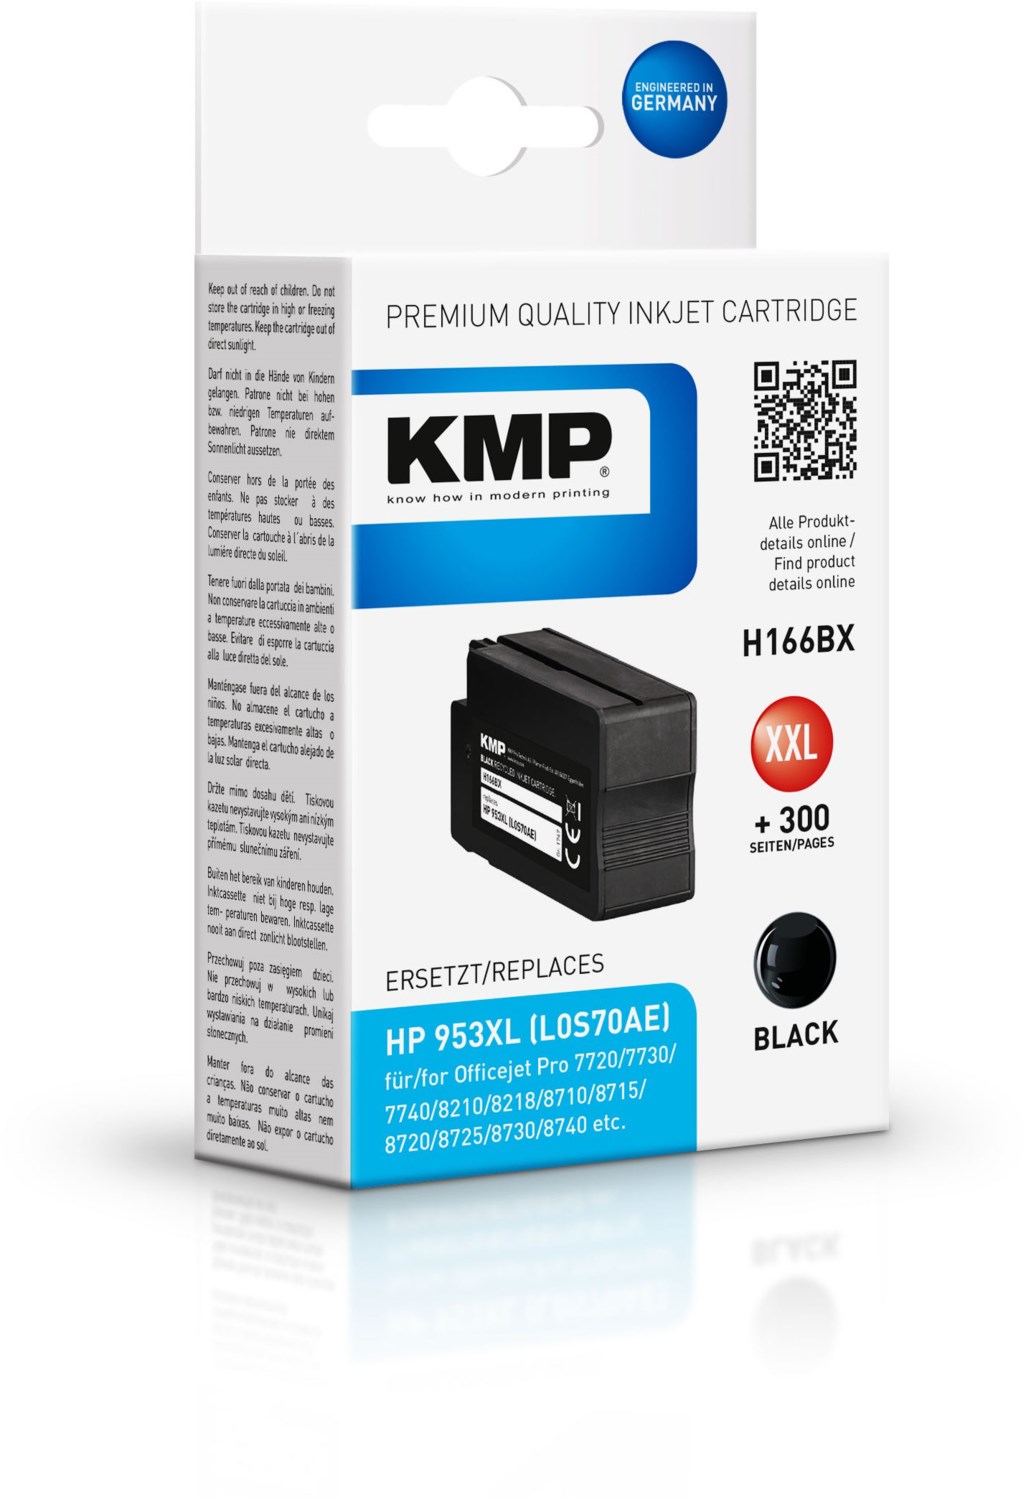 Kmp 1747,4001 black Remanufactured Toner Cartridge 1 pack